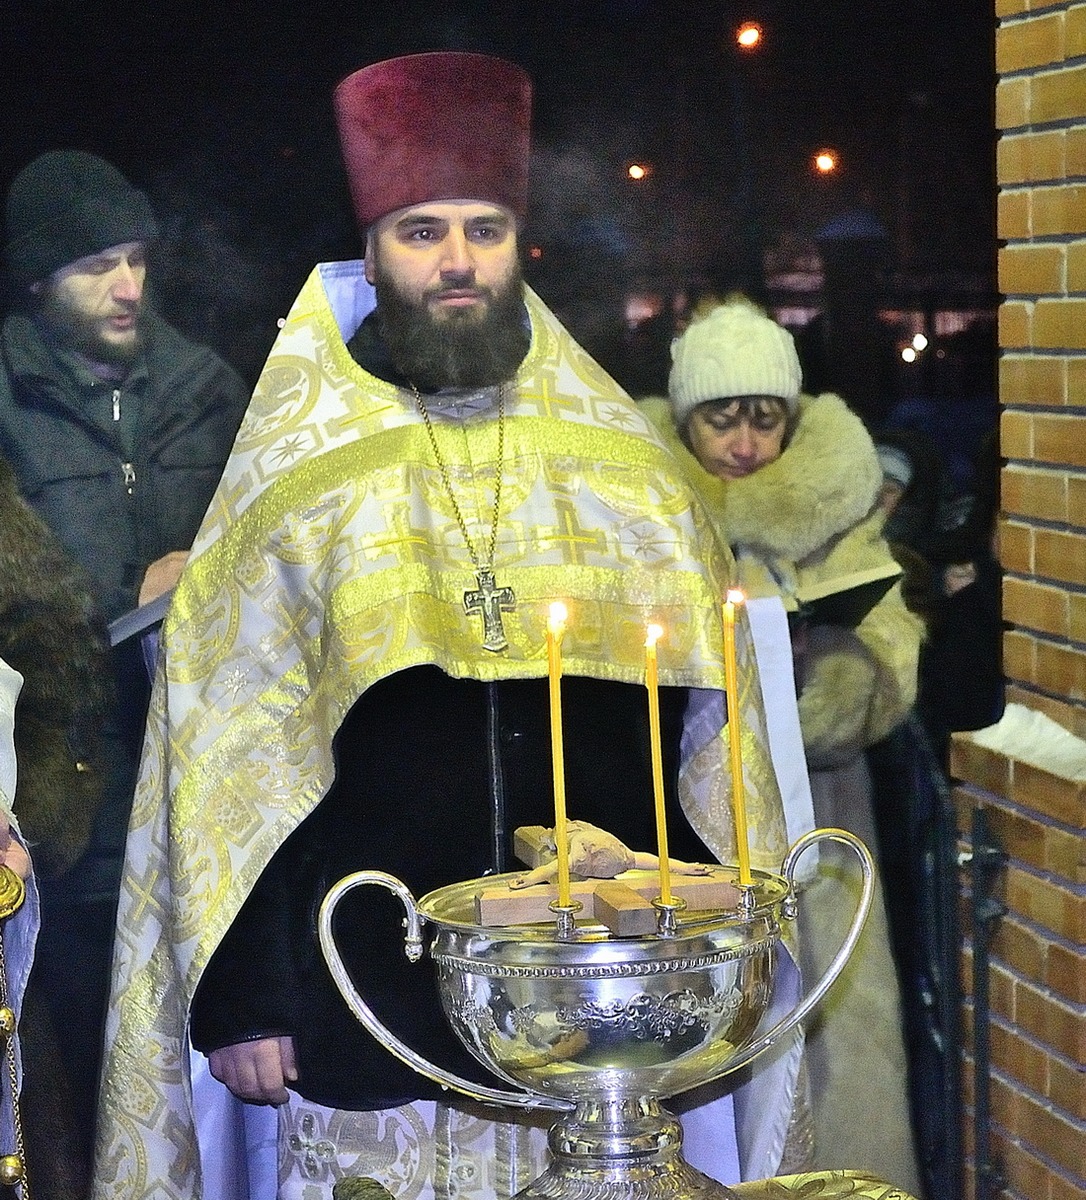 Престольный праздник отметили прихожане прихода во имя святого благоверного князя Александра Невского г.Барнаула 